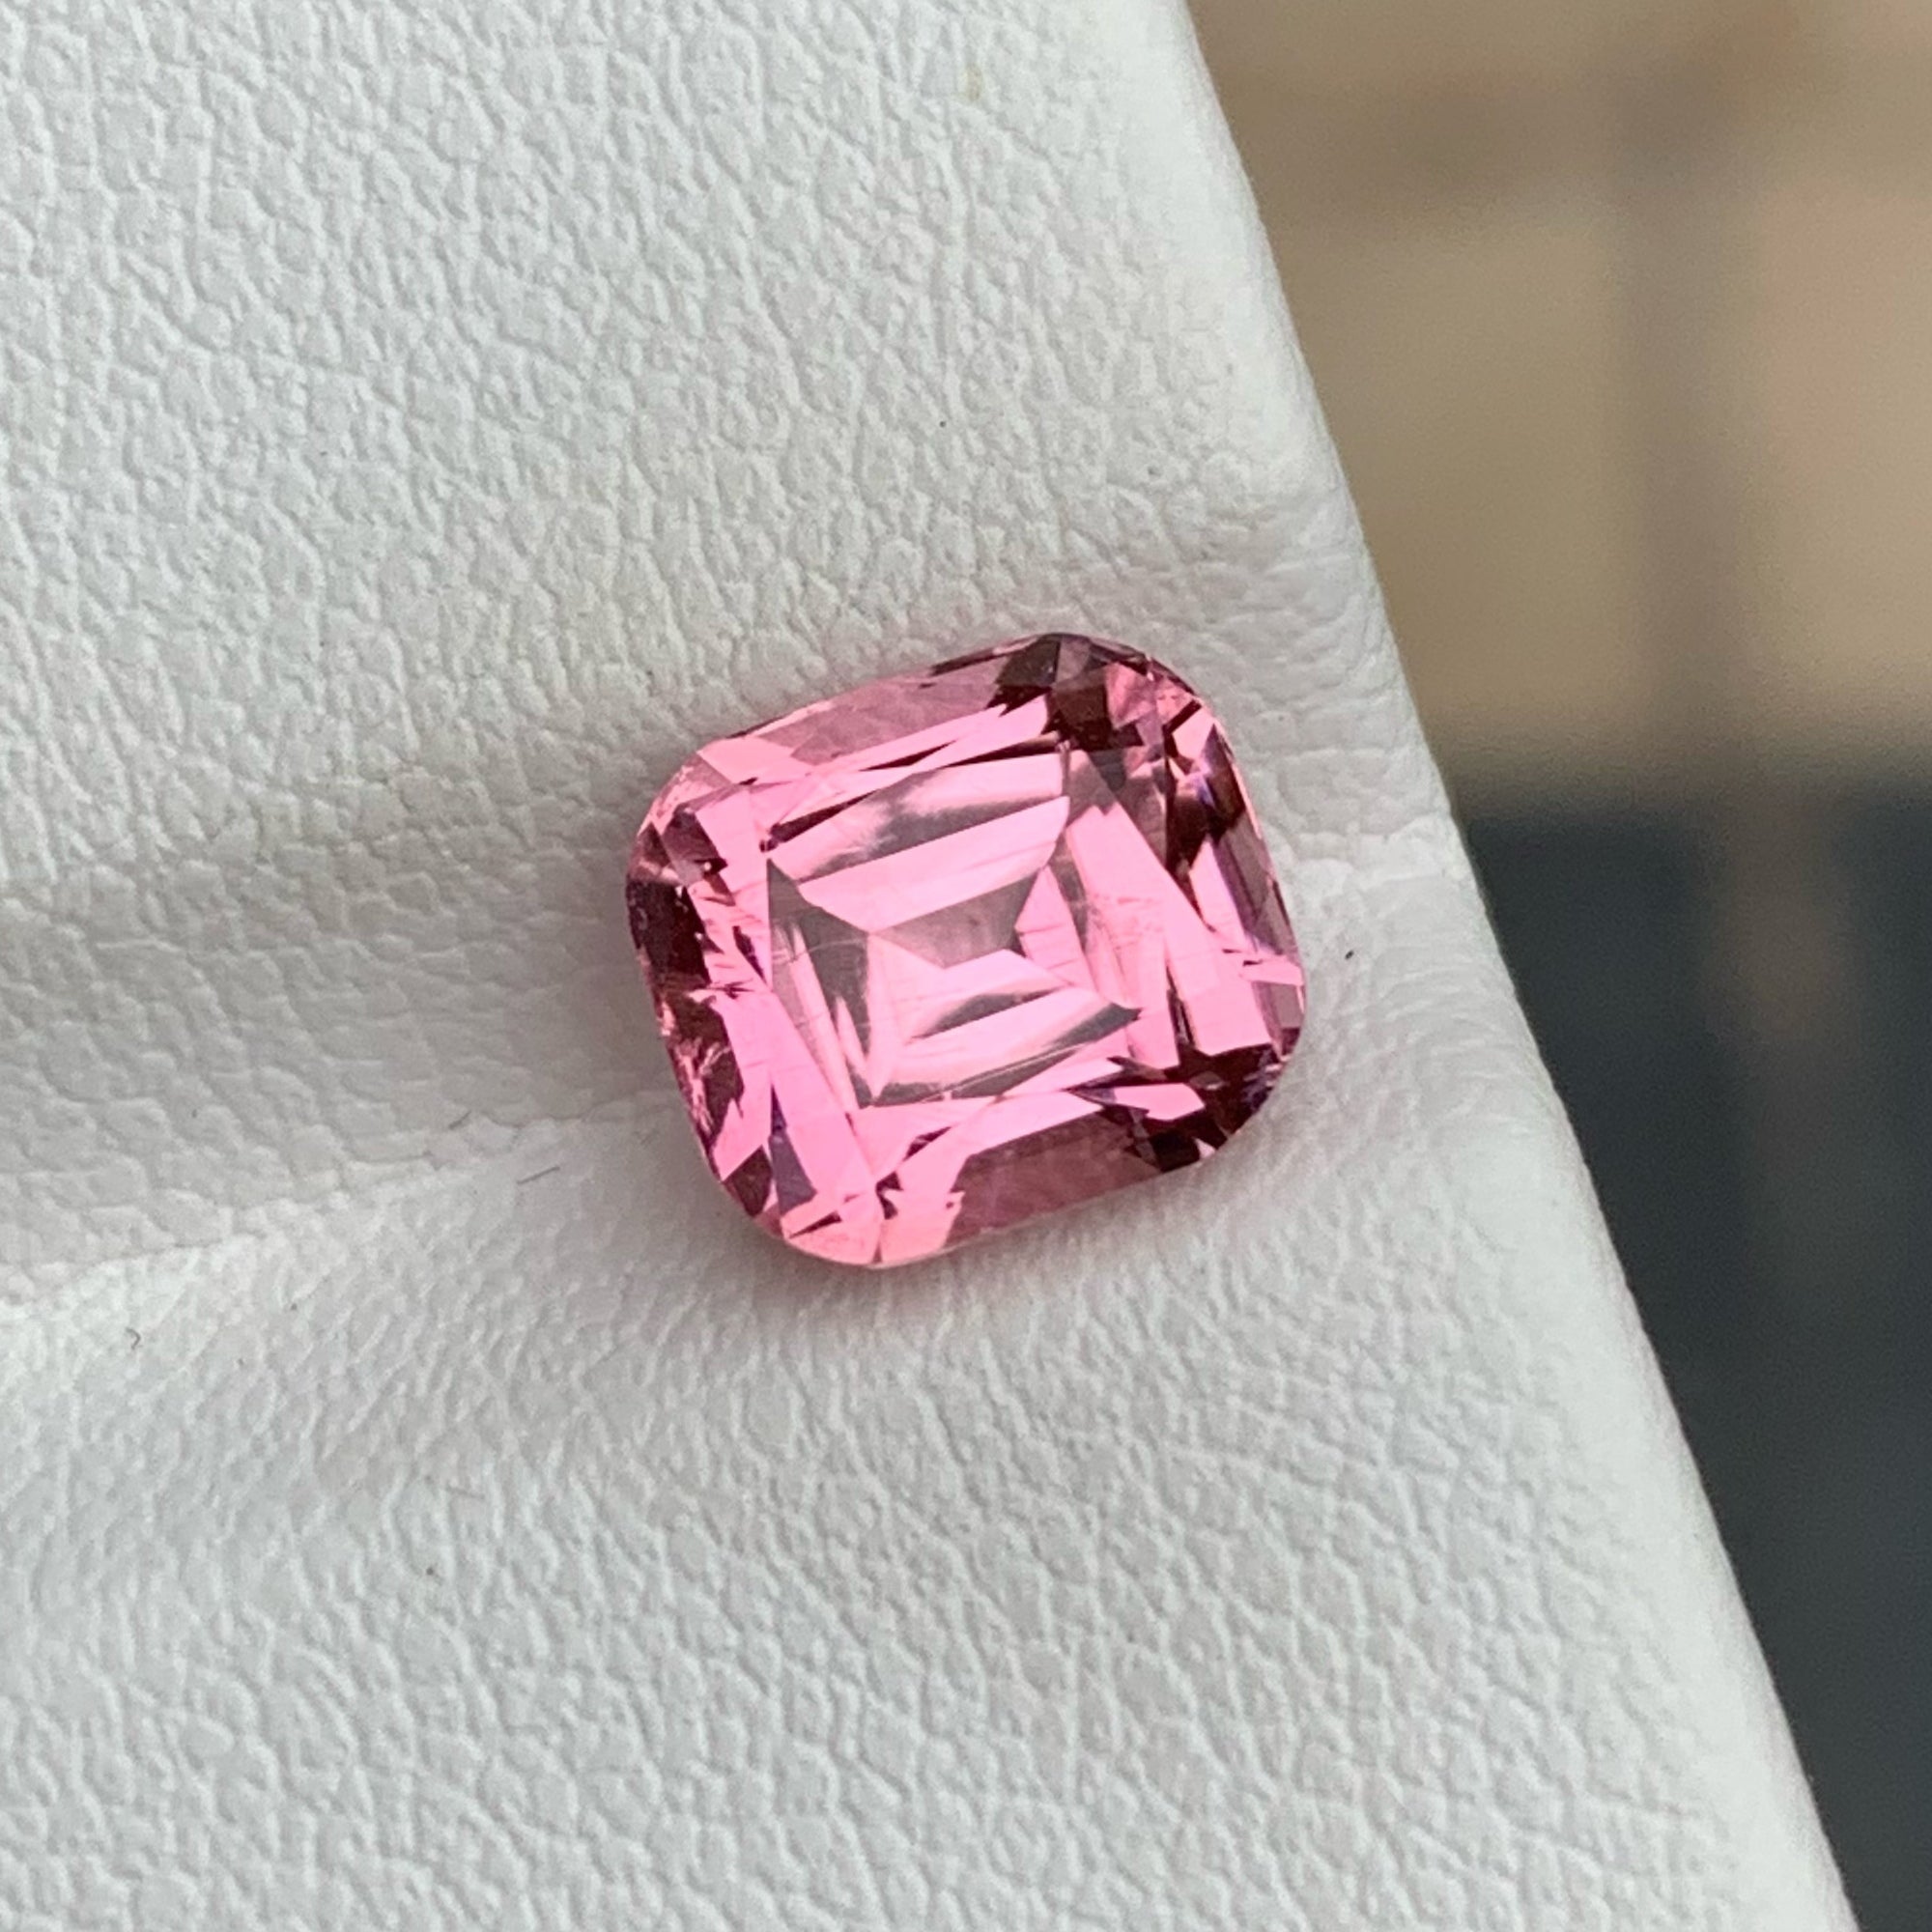 Elegant Pink Tourmaline Loose Gemstone